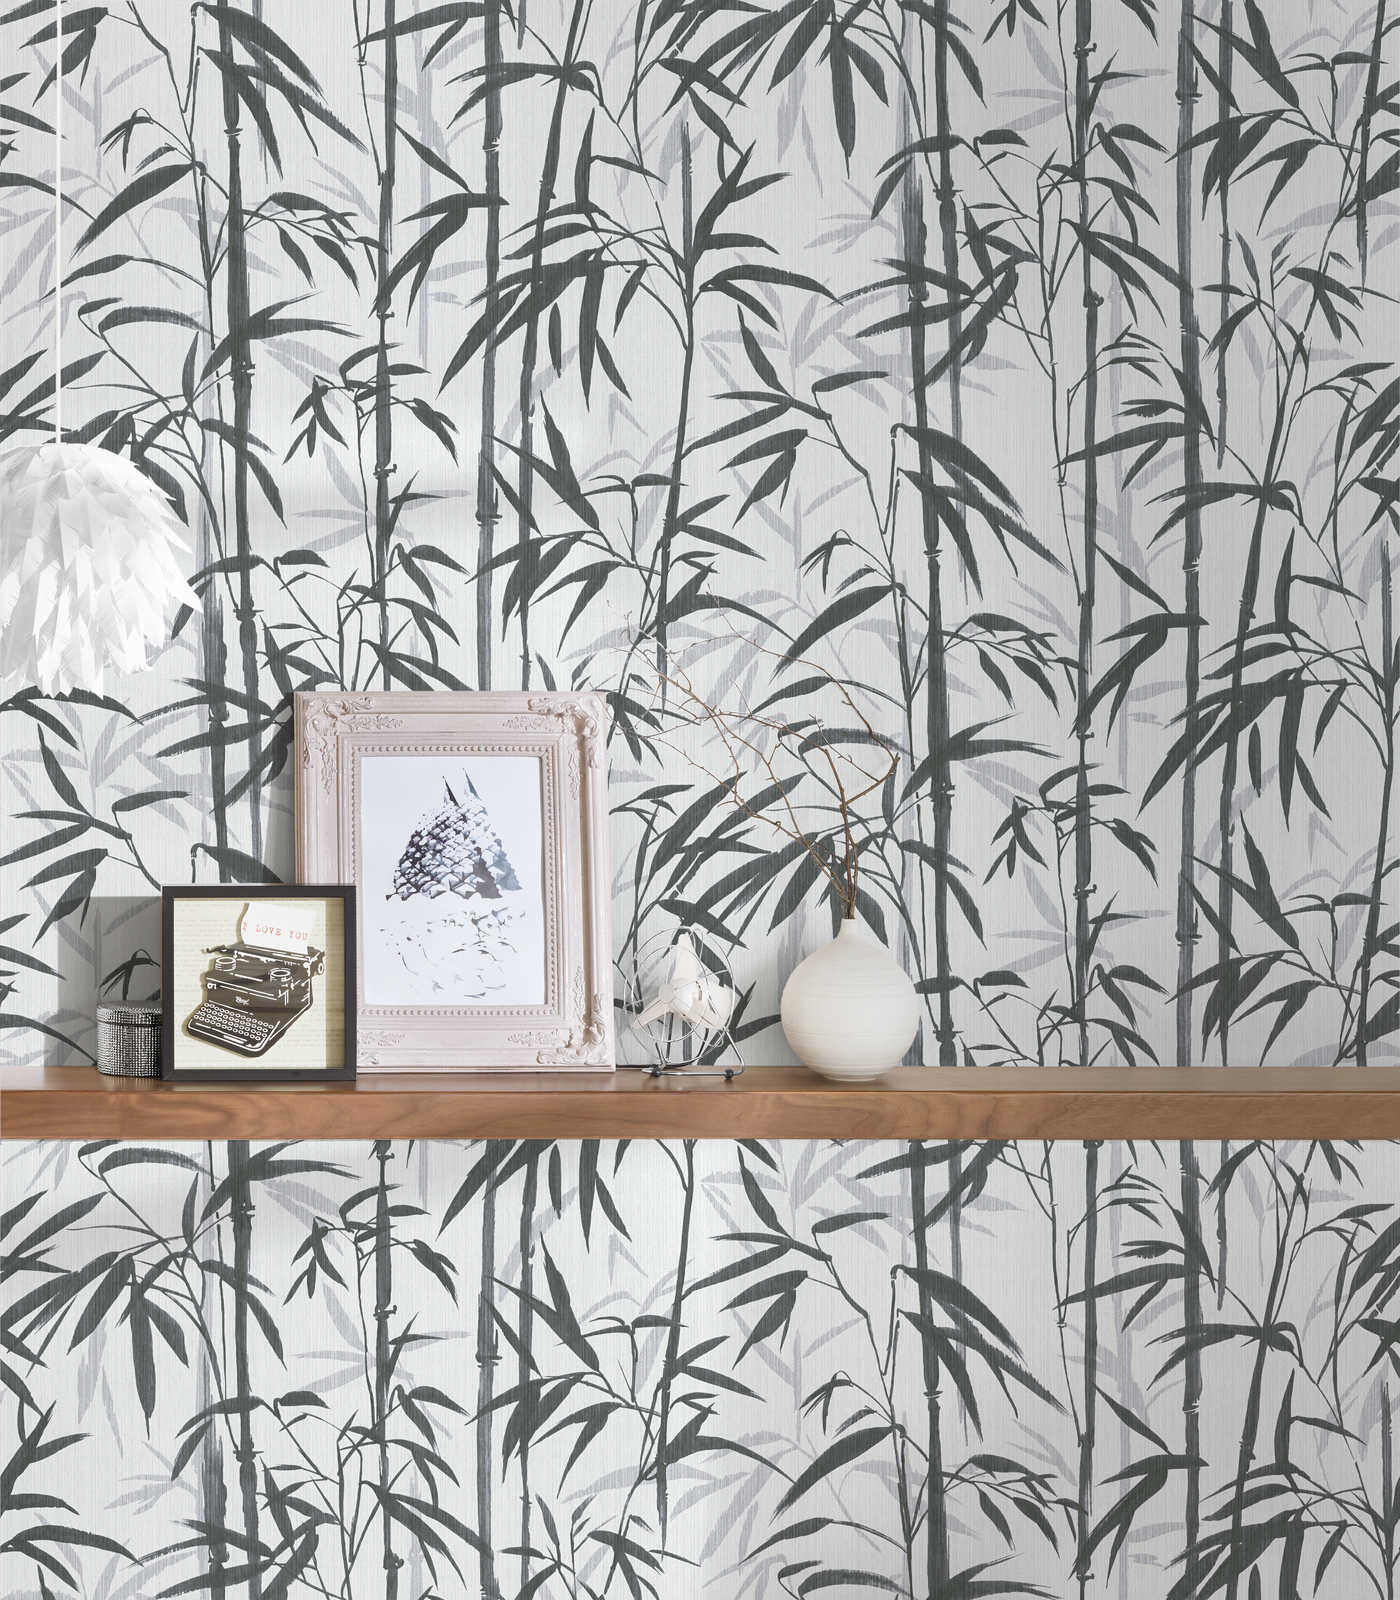             MICHALSKY Vliestapete Bambus Design in Schwarz-Weiß
        